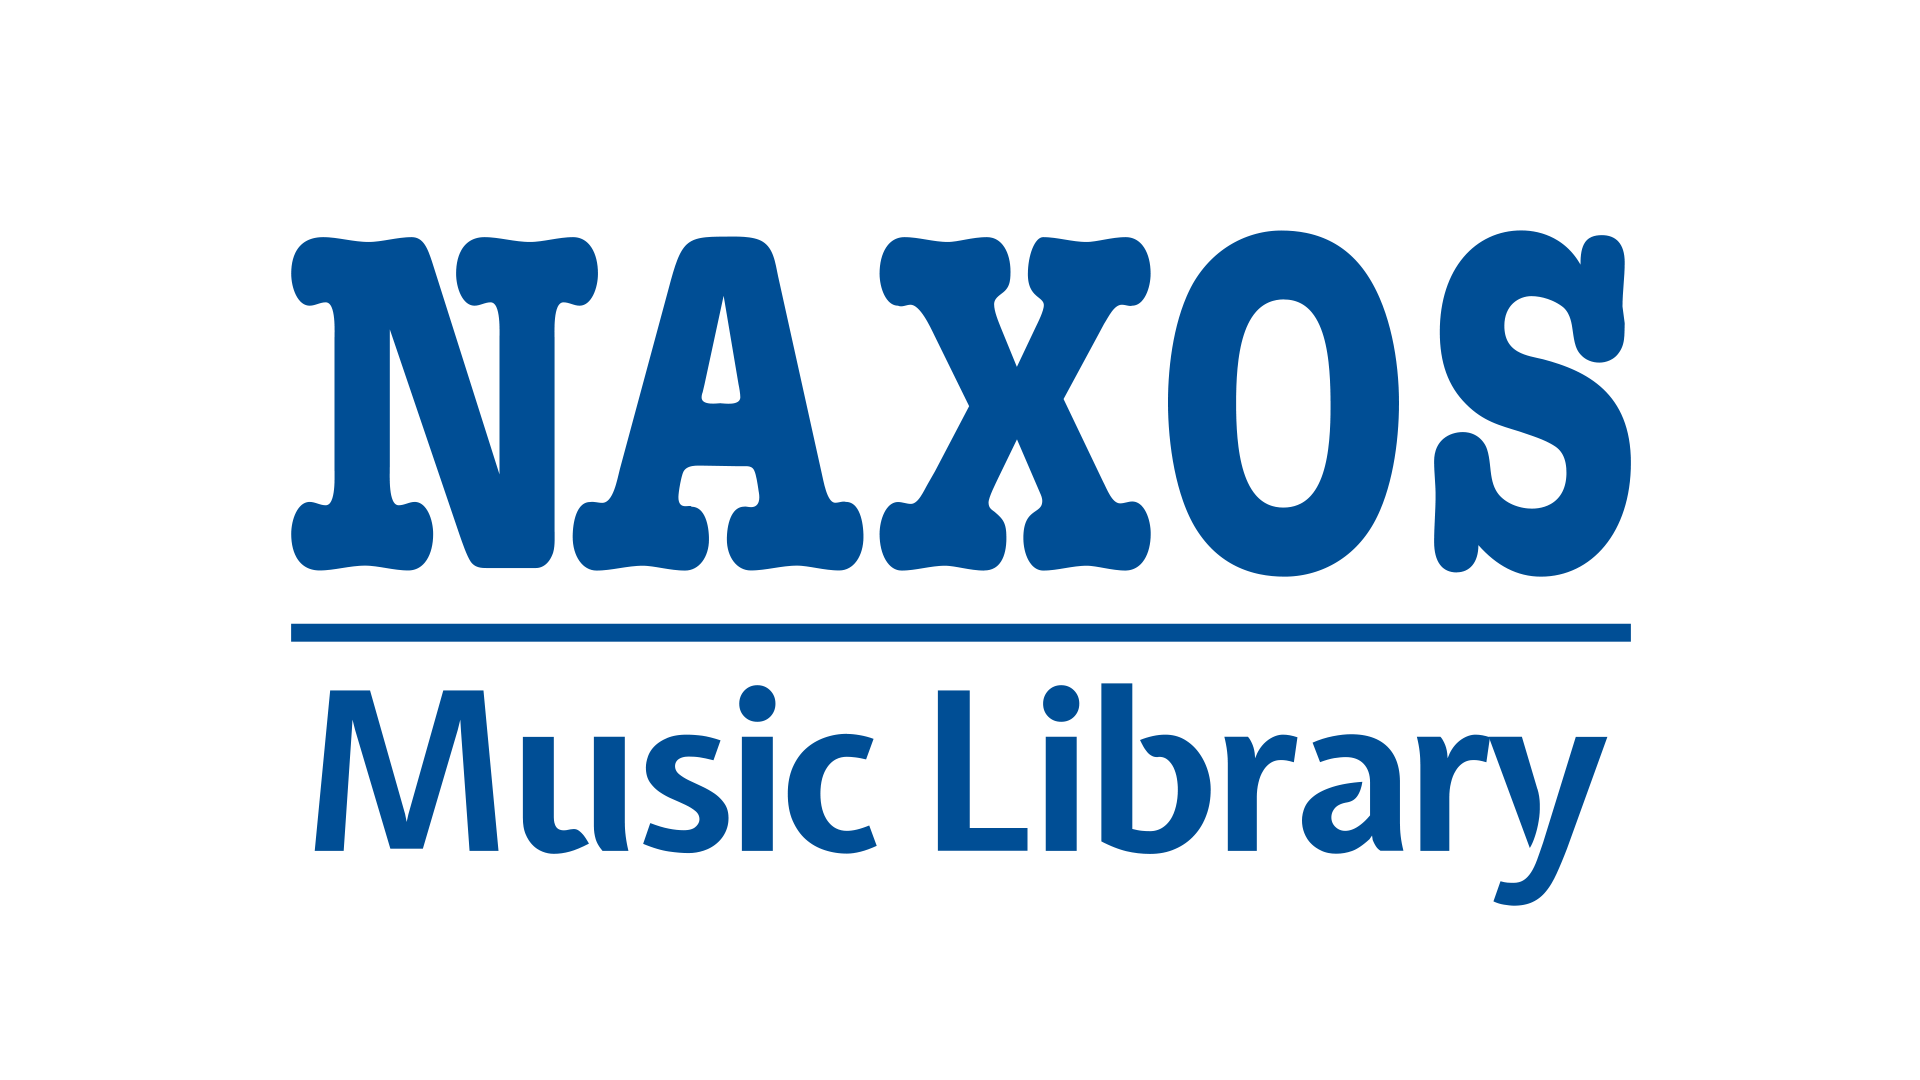 Sigla Naxos Music Library